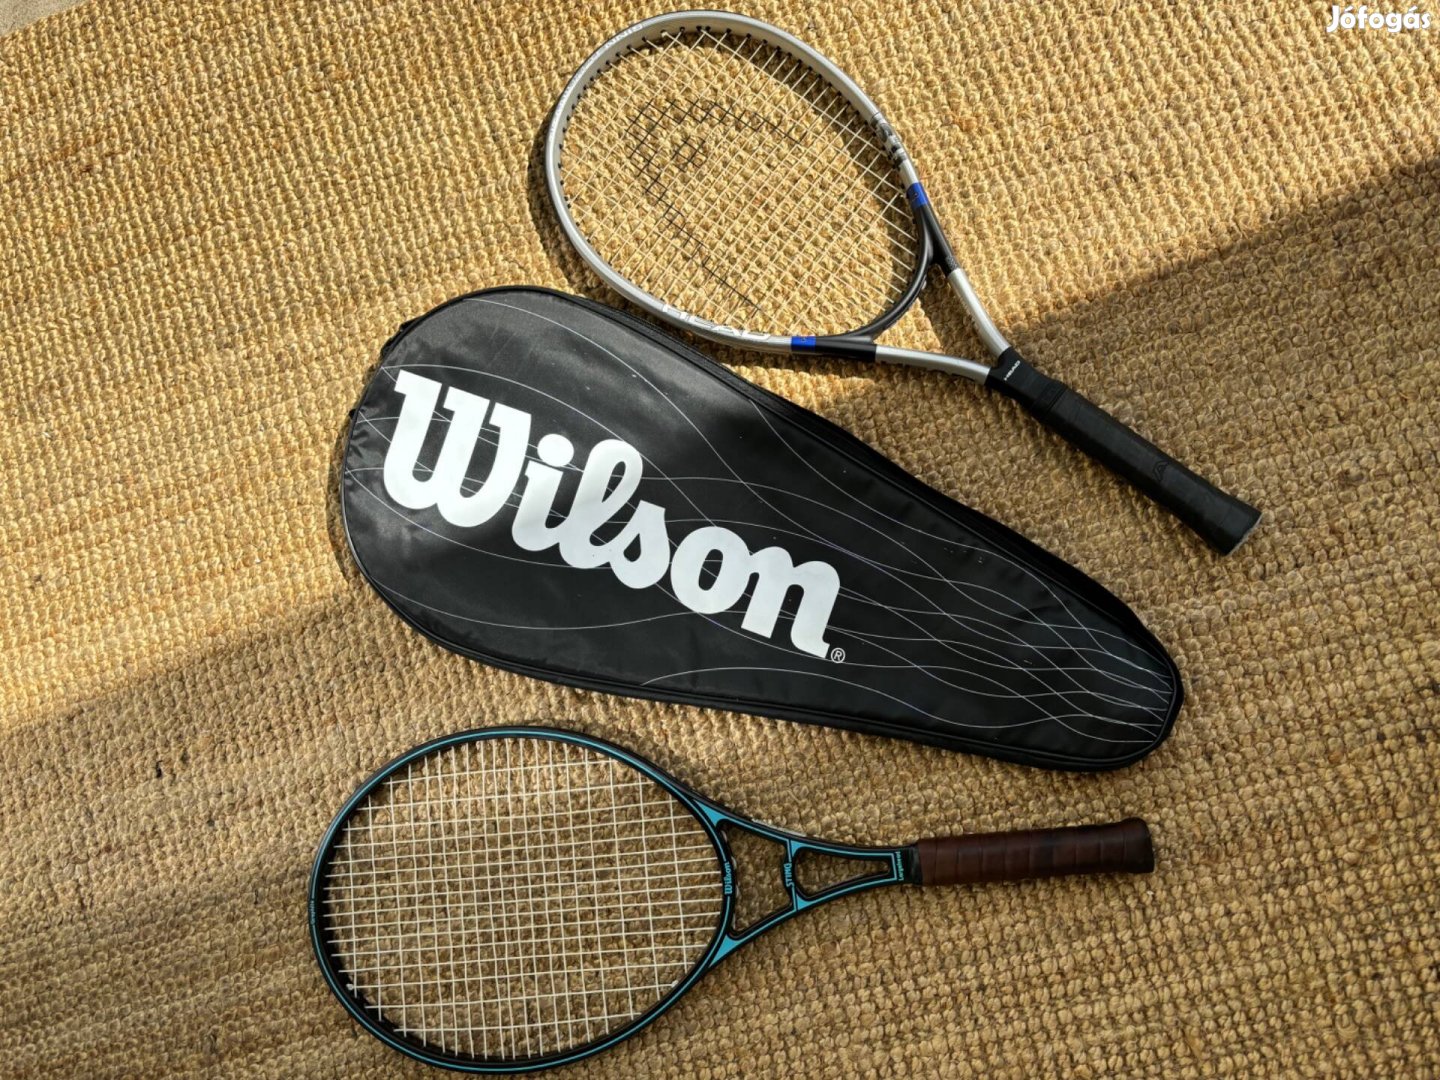 Head és Wilson tenisz ütők szép állapotban új markolattal